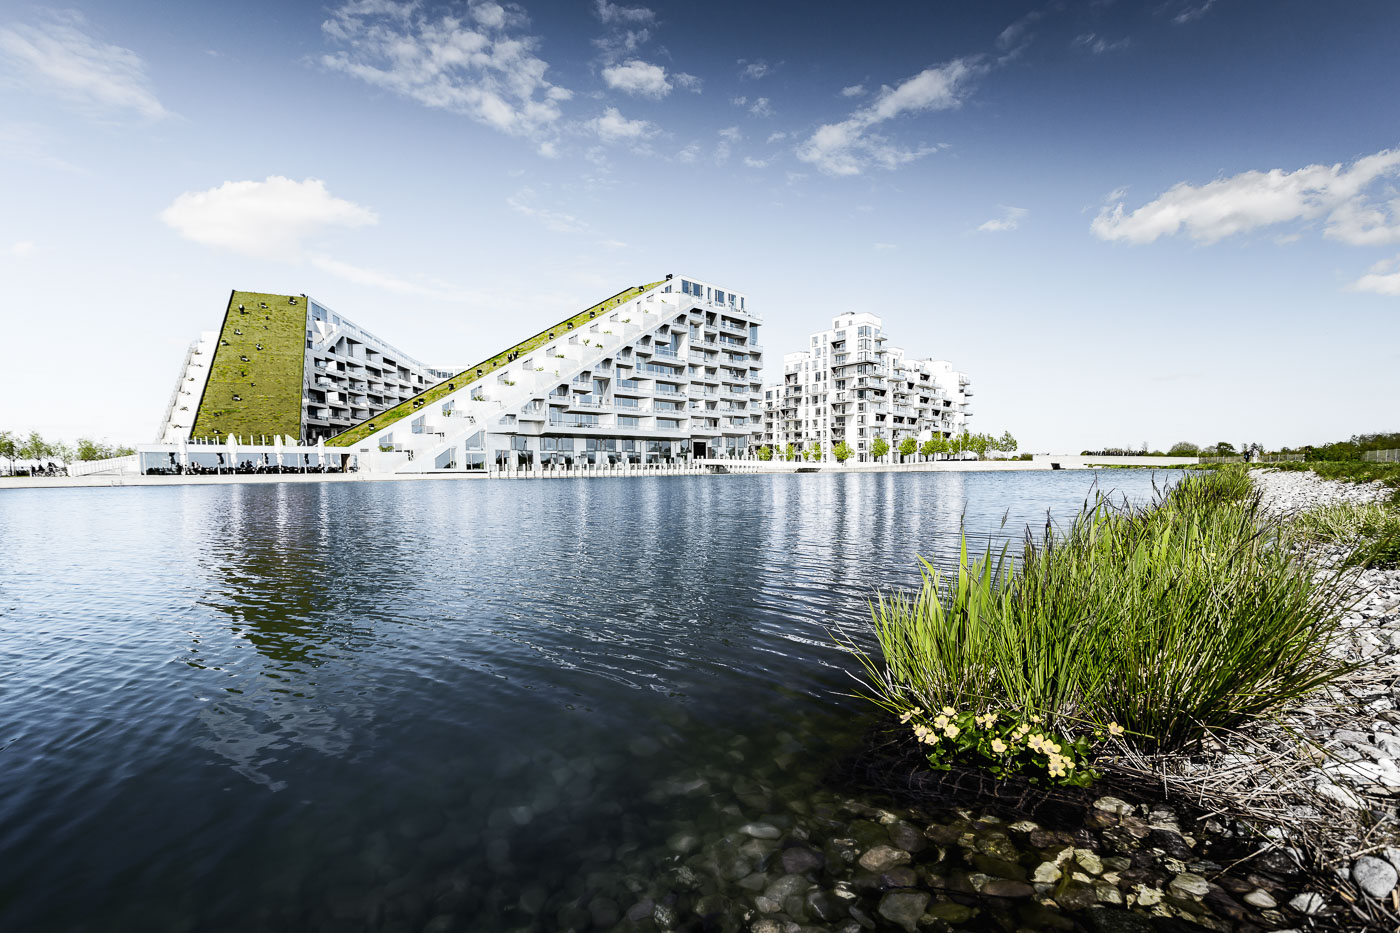 8 House Copenhagen by Bjarke Ingels Group